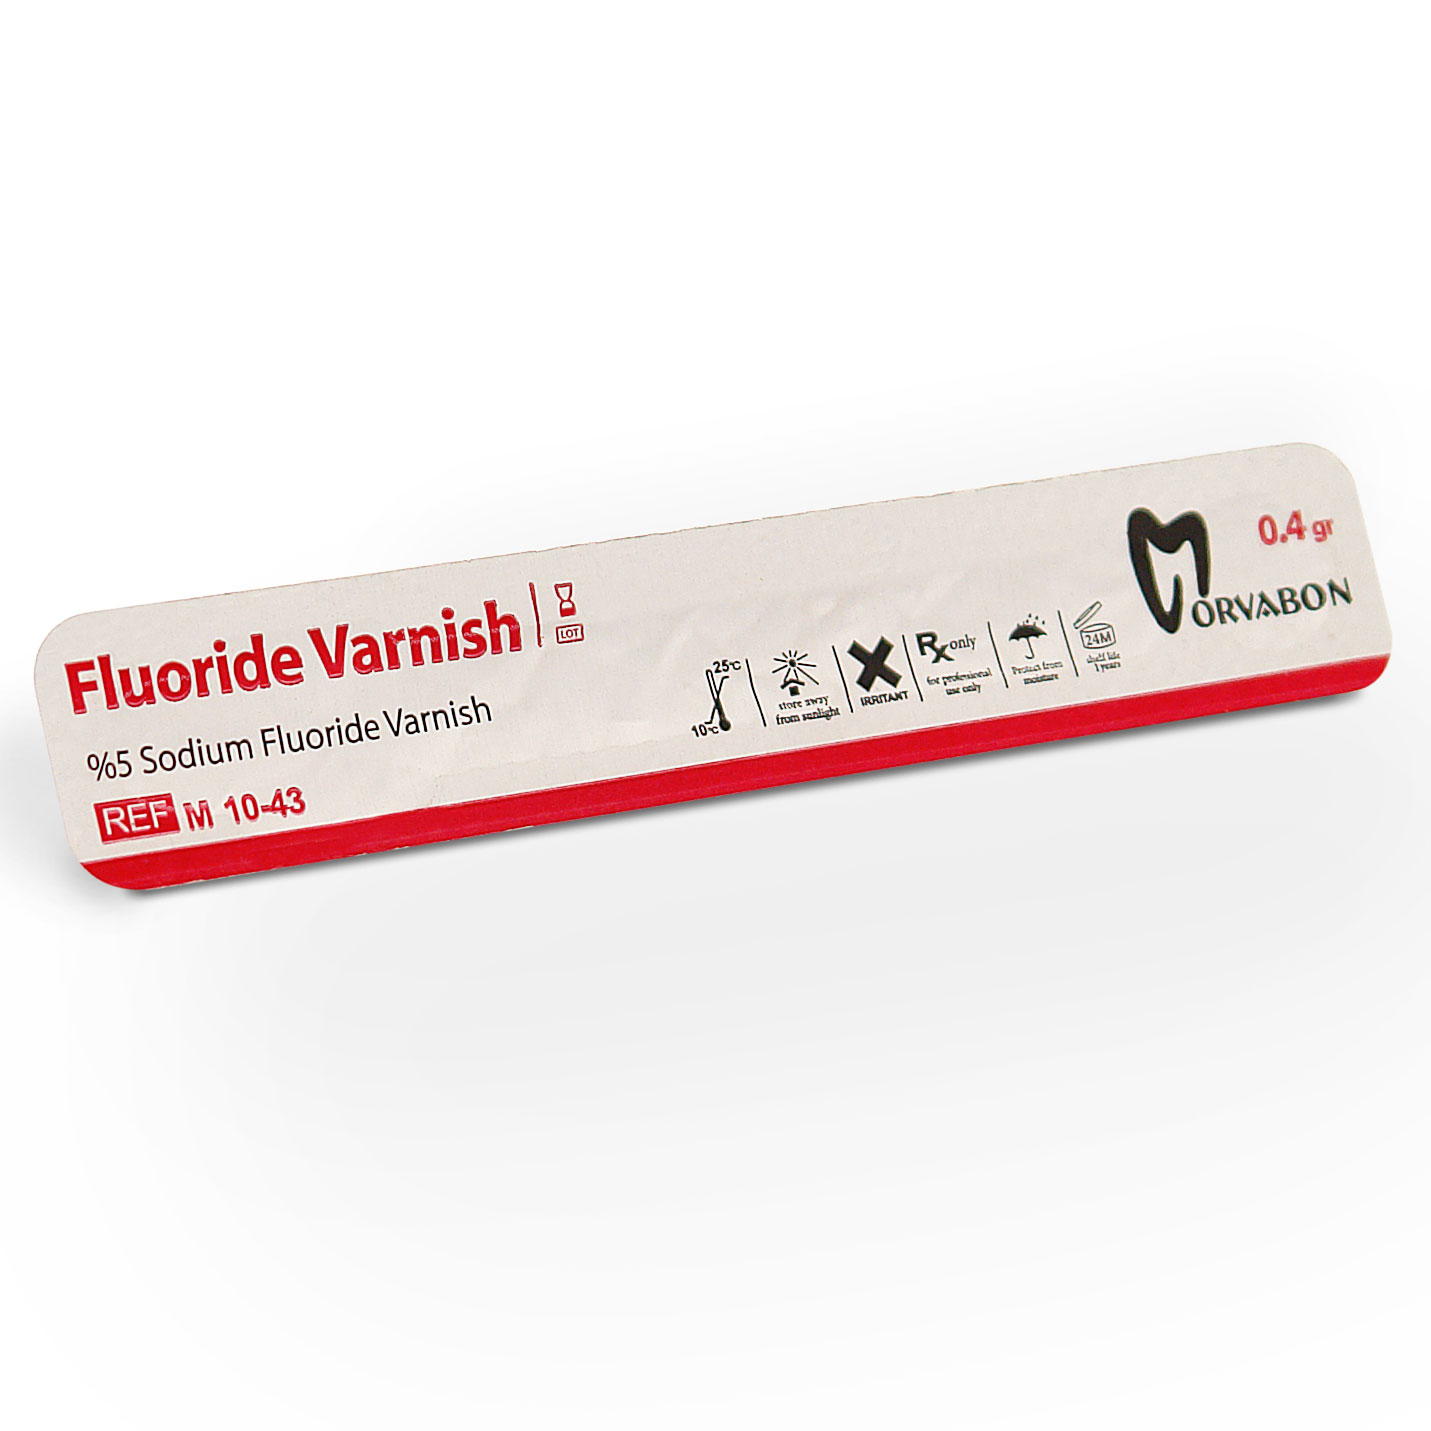 وارنیش فلوراید Varnish Fluoride